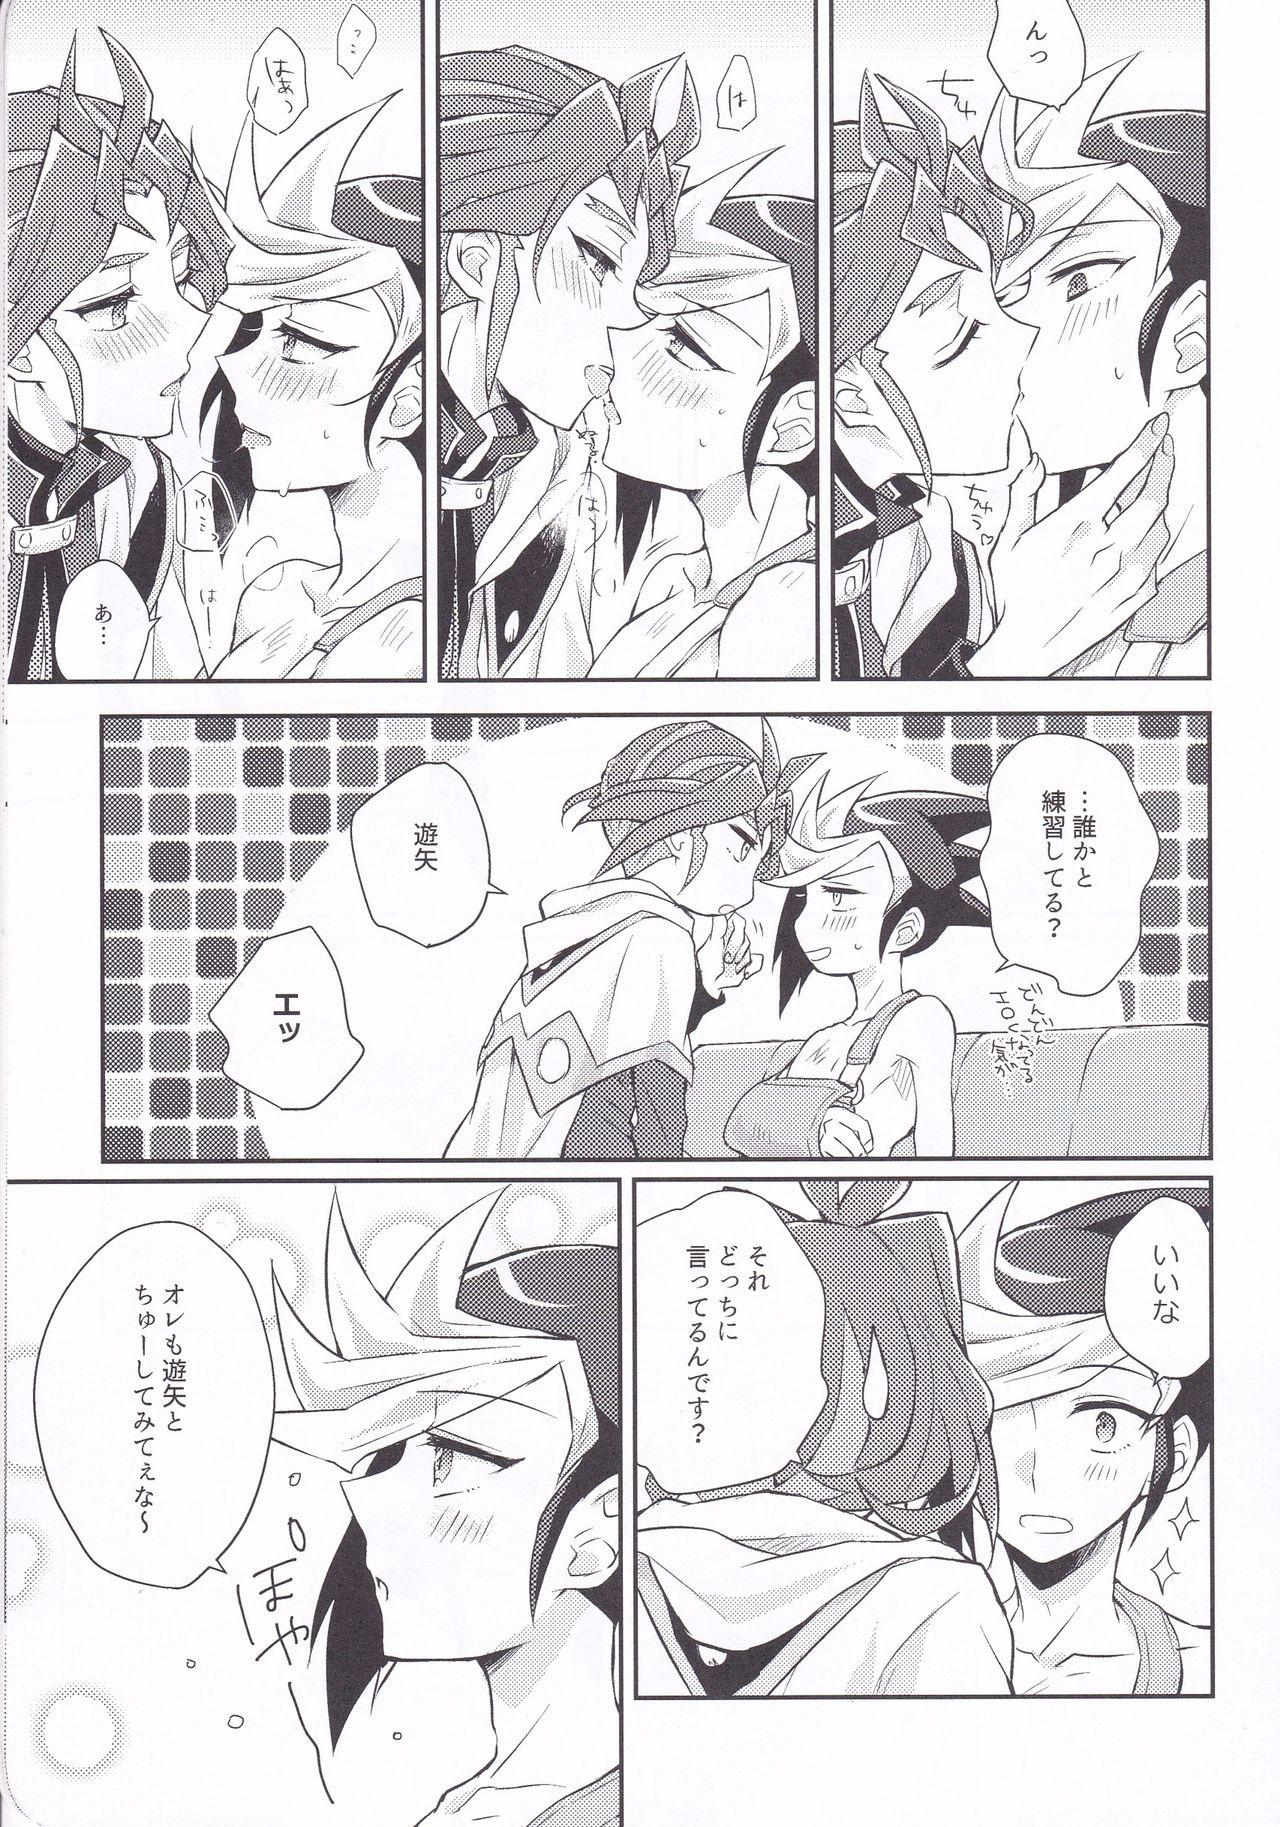 Weird Asu kara Kimi ga Tame - Yu-gi-oh arc-v Dick - Page 6